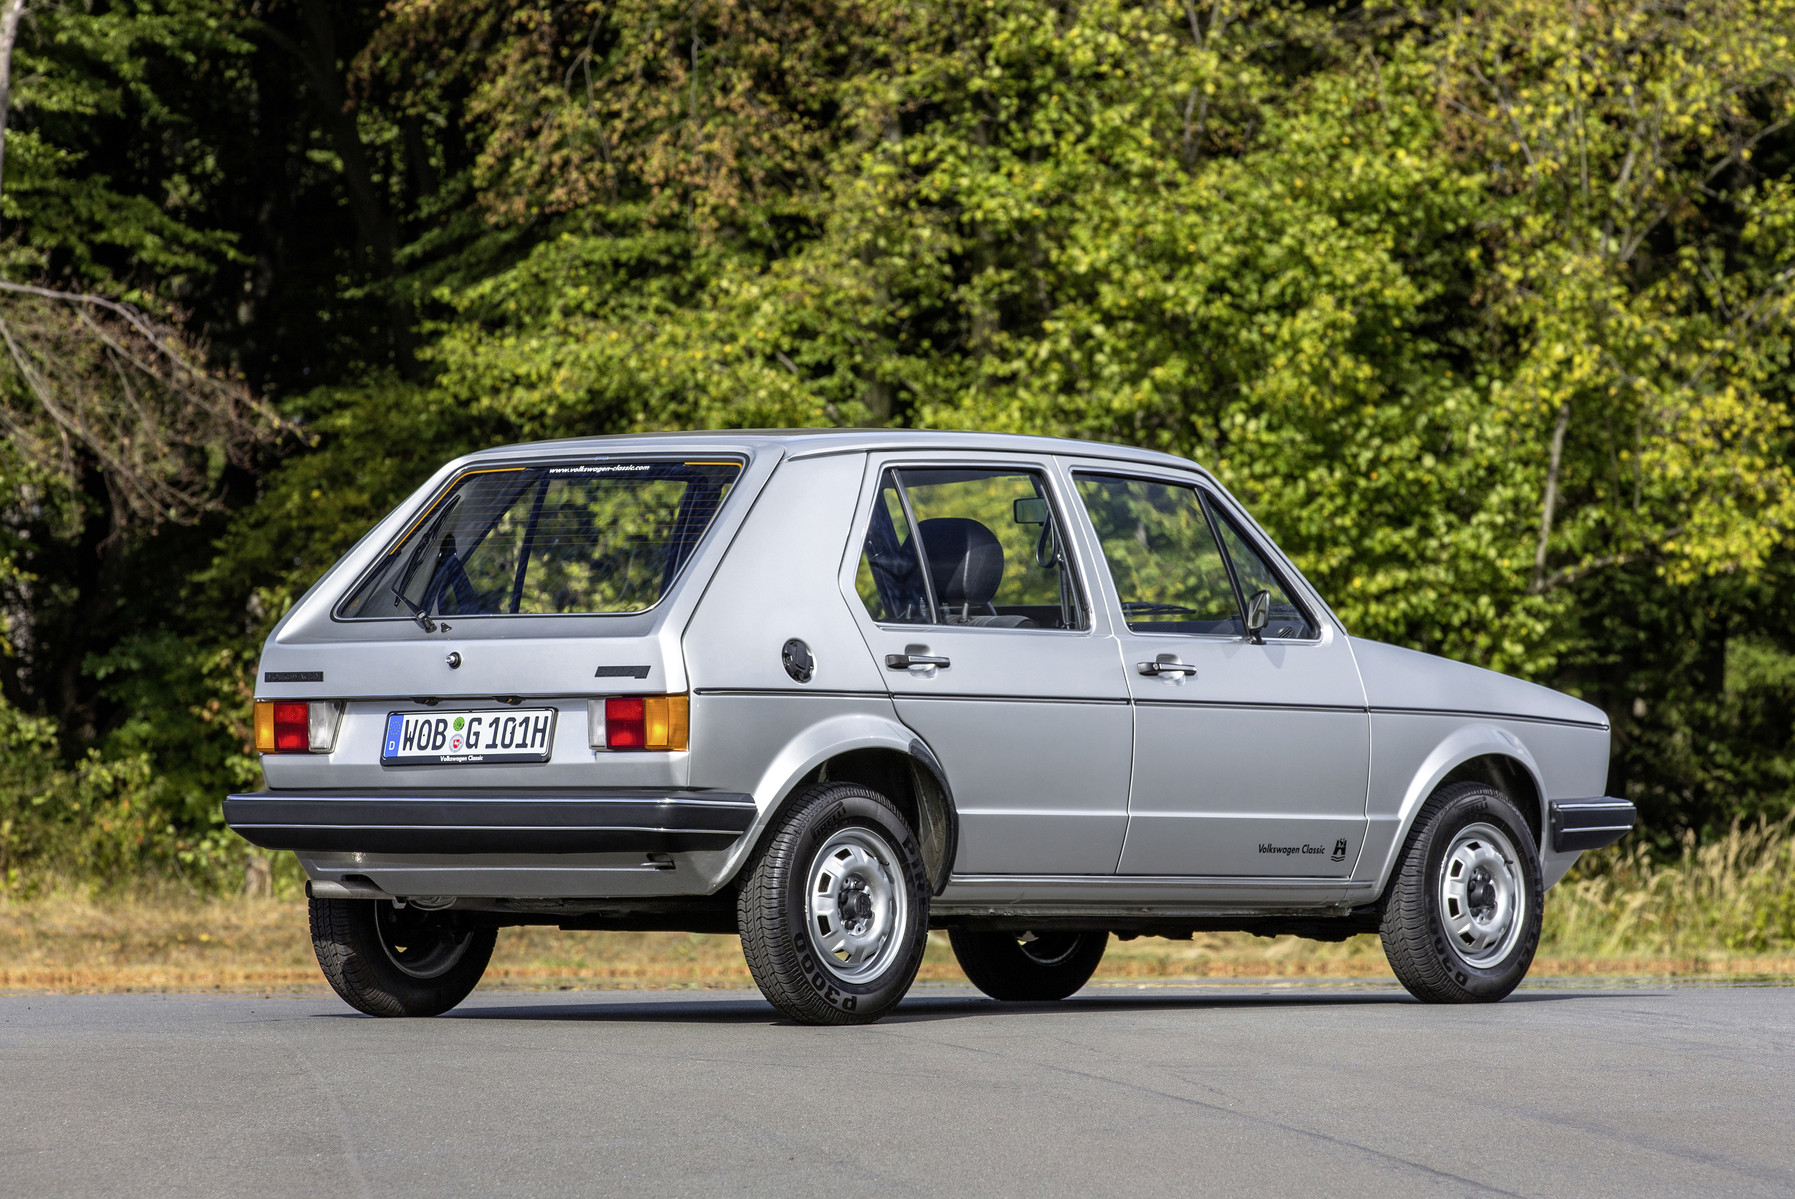 Padesát let a stále je u německé značky označován jako bestseller. Volkswagen Golf slaví své kulatiny